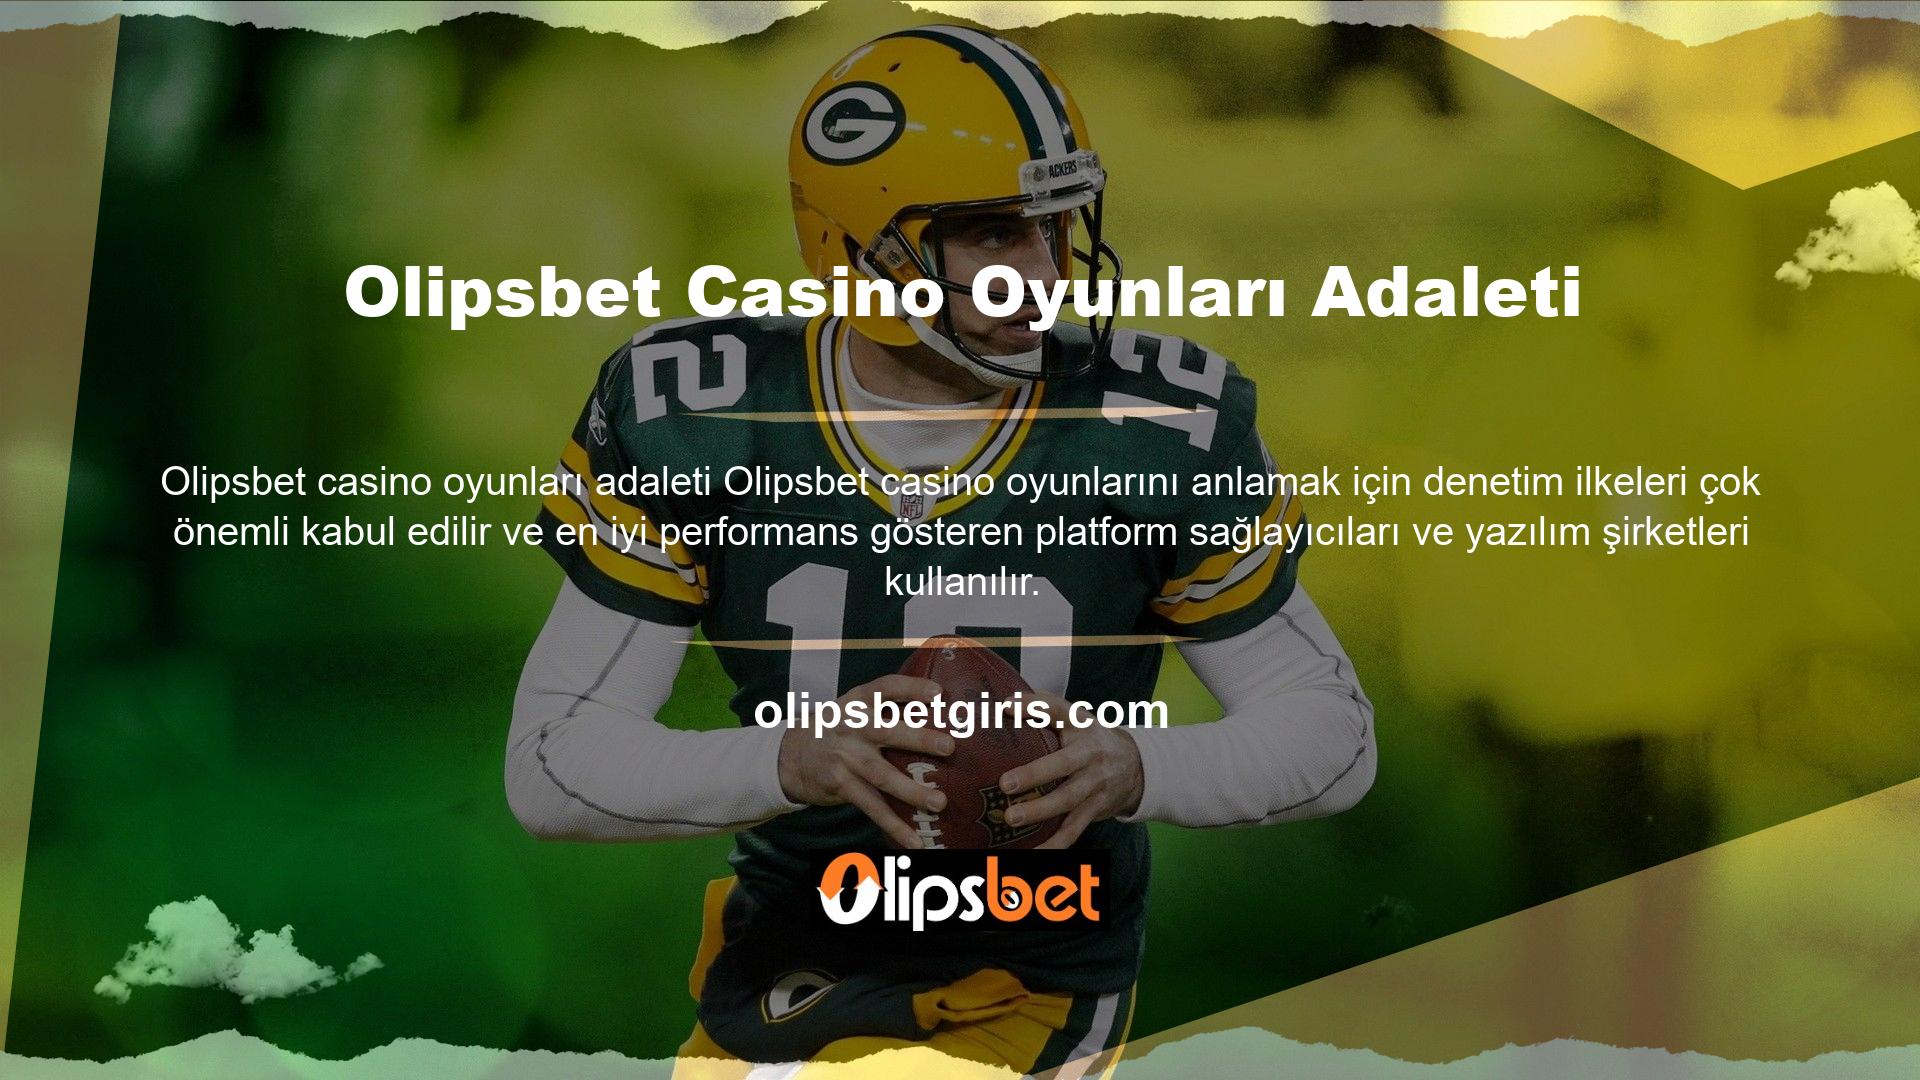 Olipsbet Casinodaki oyunlar adil, güvenilirdir ve tüm üyelere eşit davranır